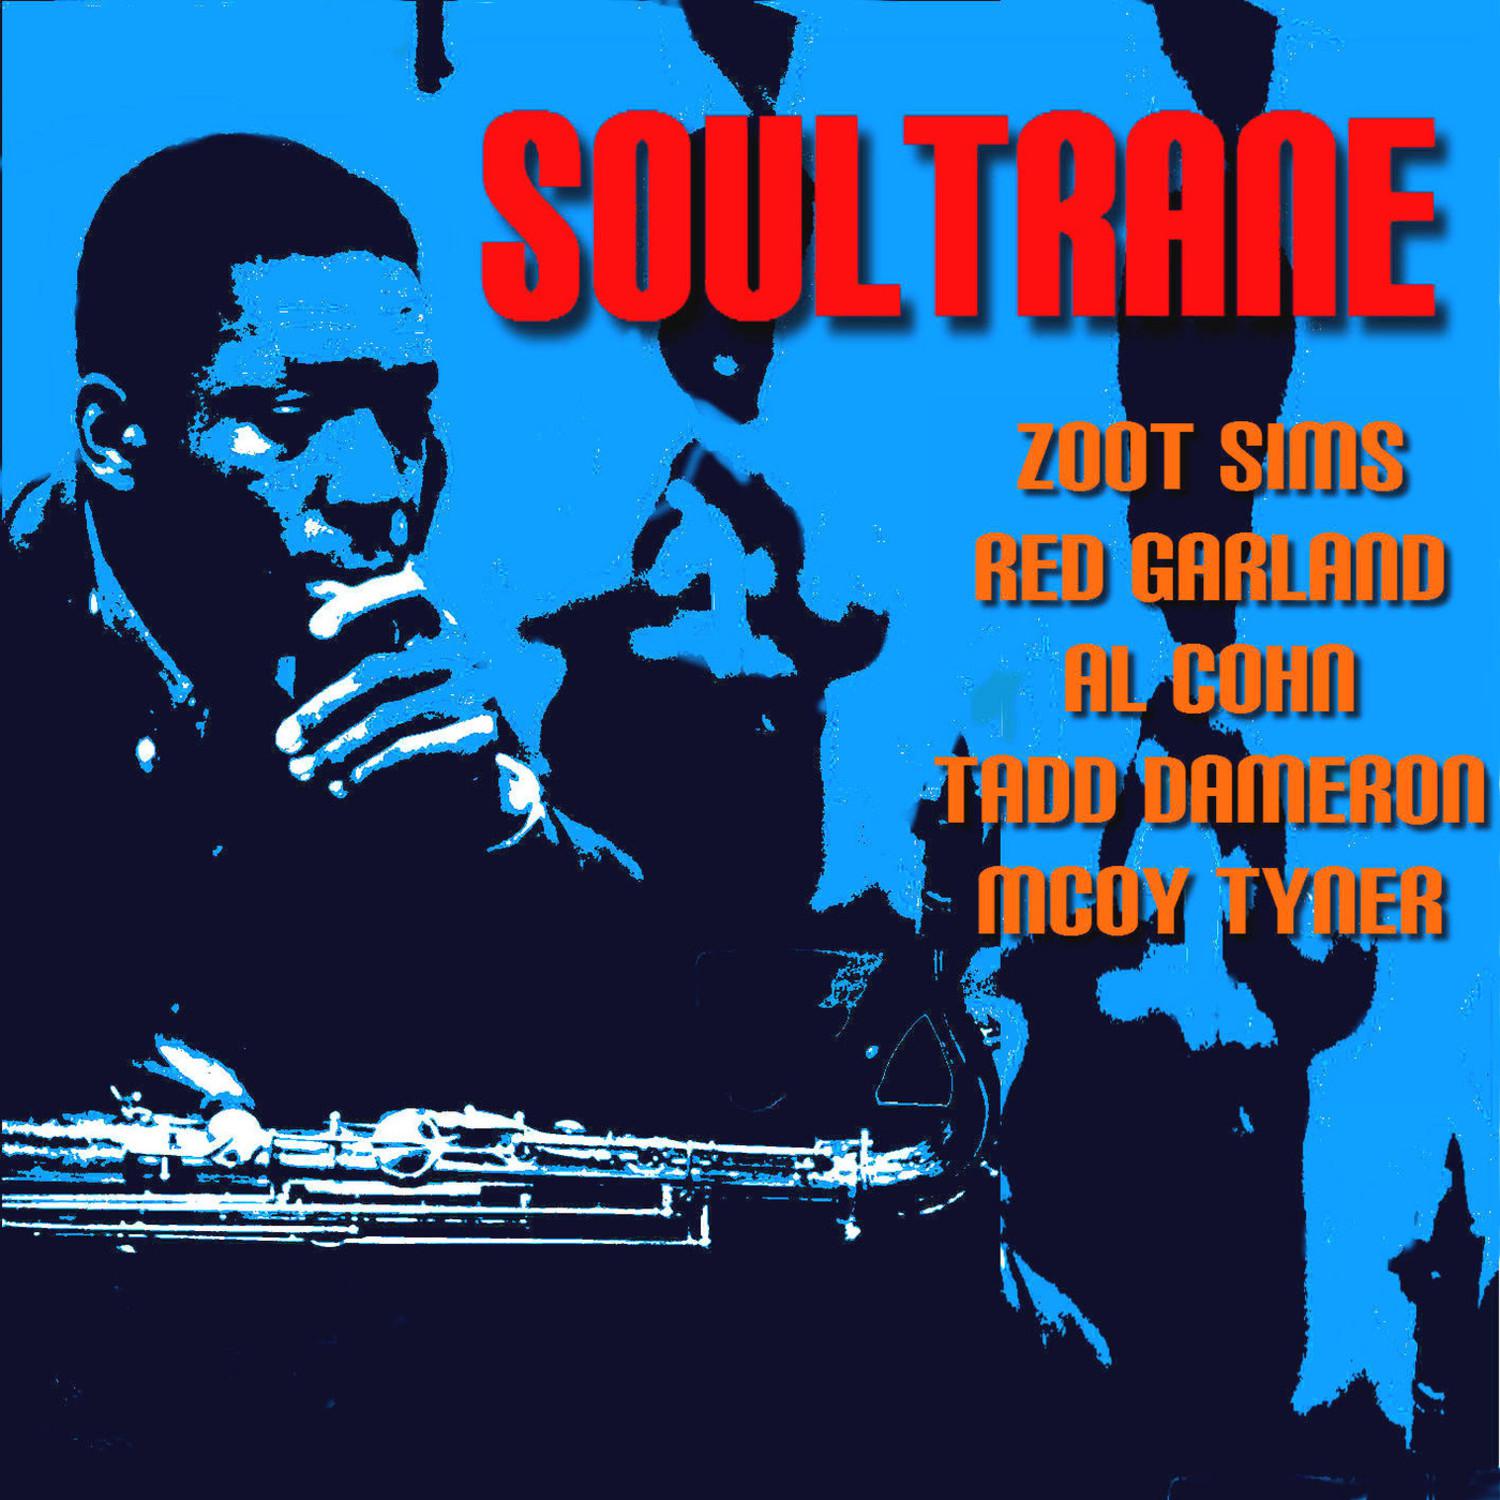 Soultrane by Coltrane